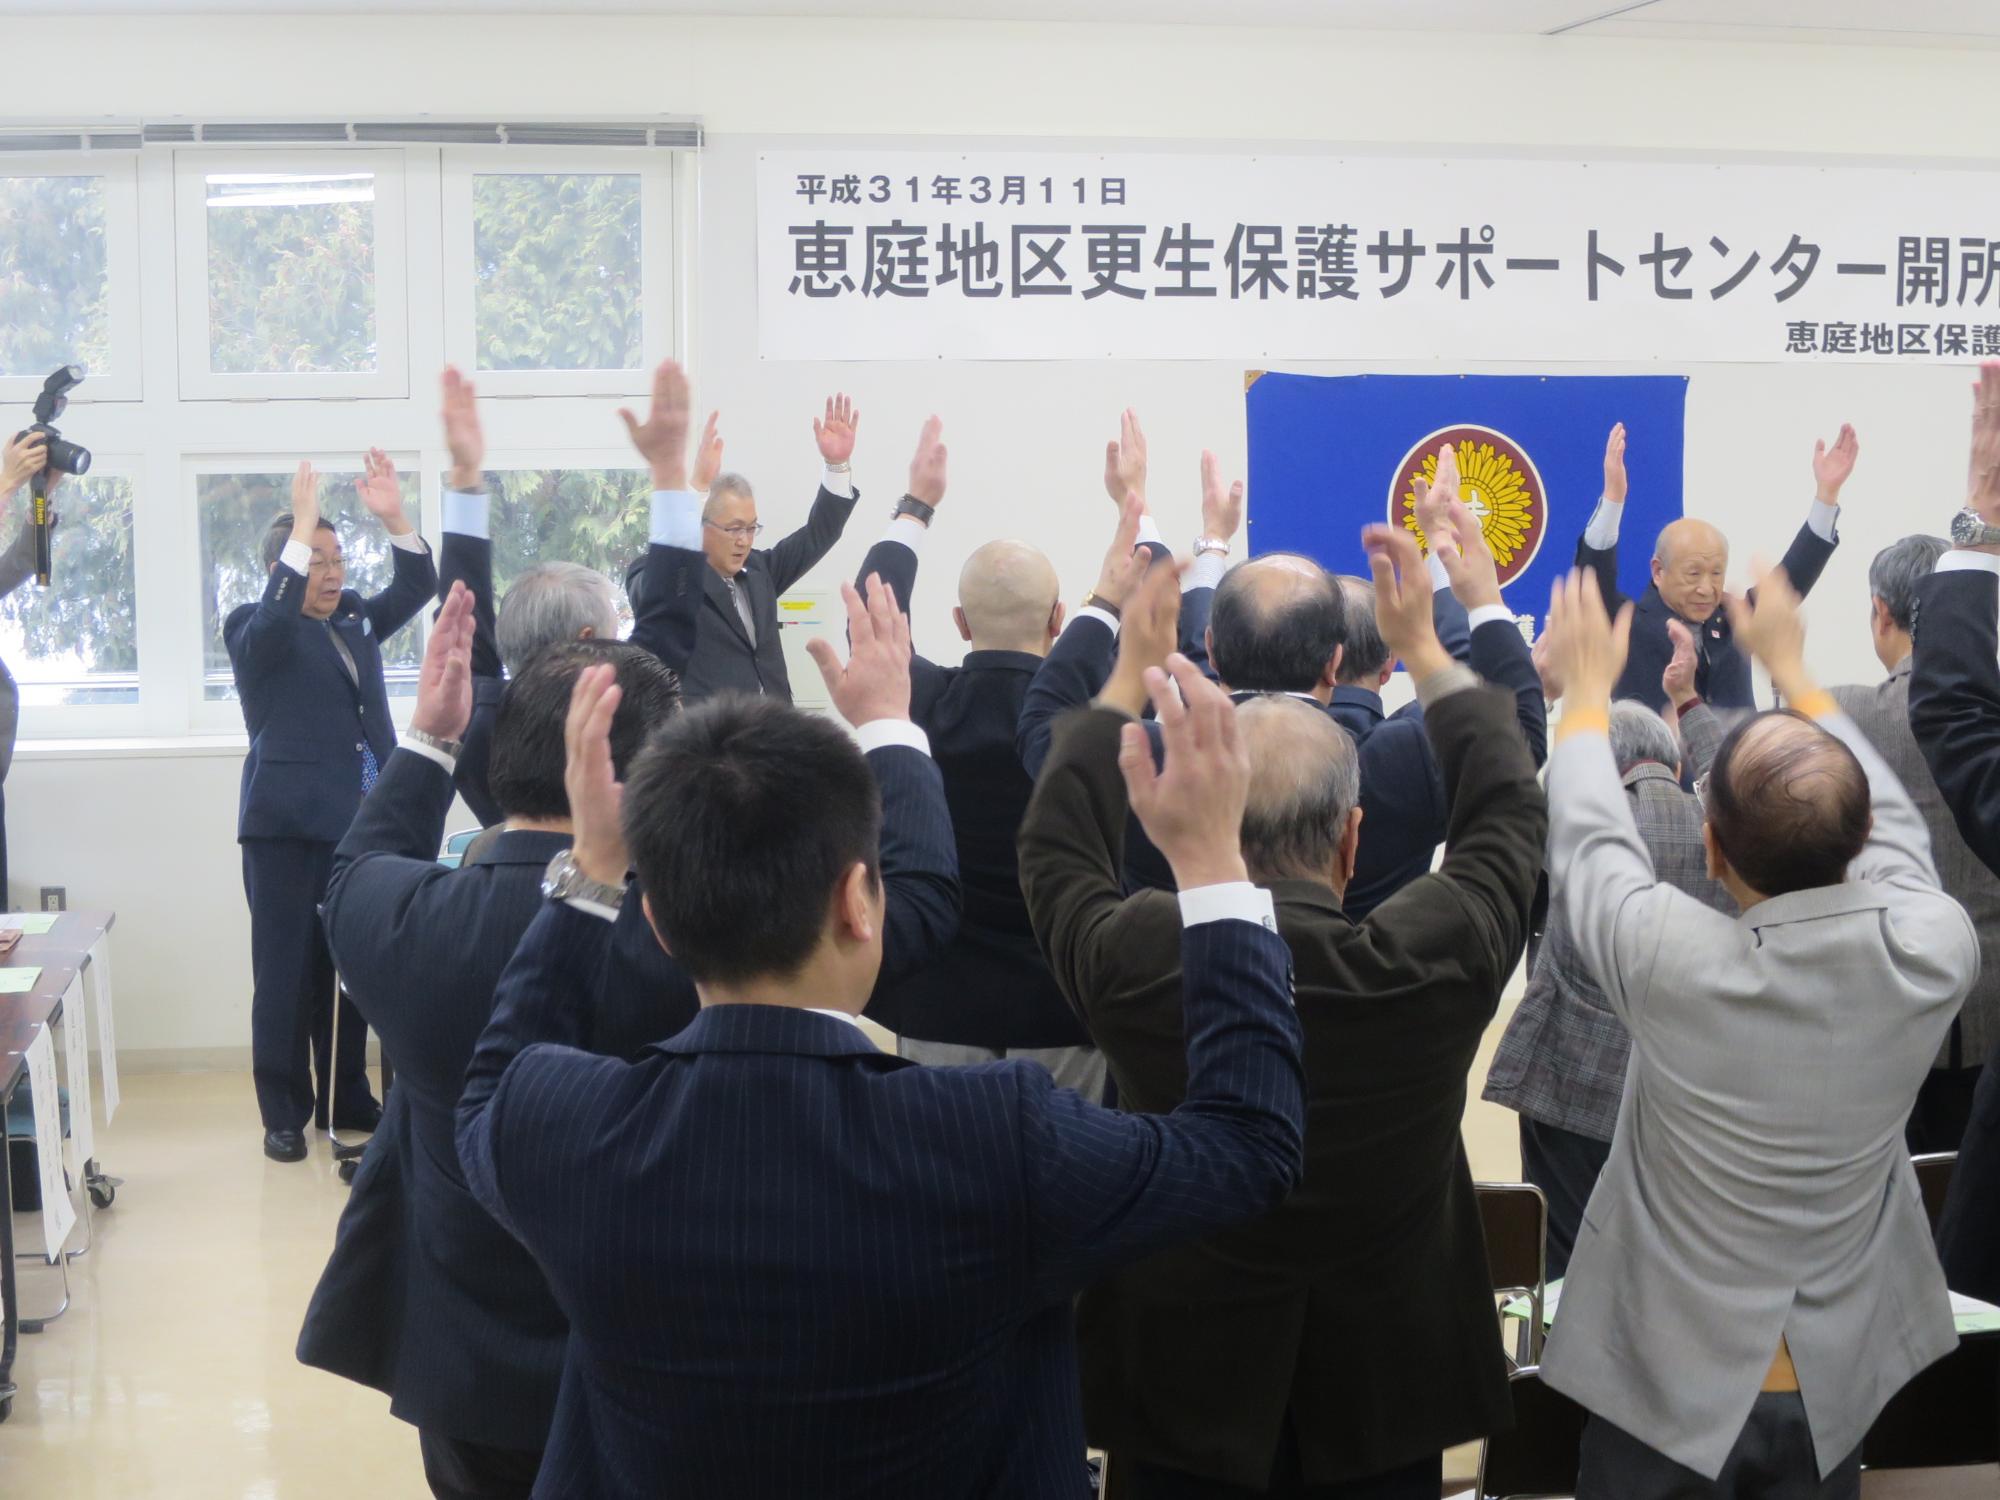 開所を祝い参加者と万歳三唱する原田市長